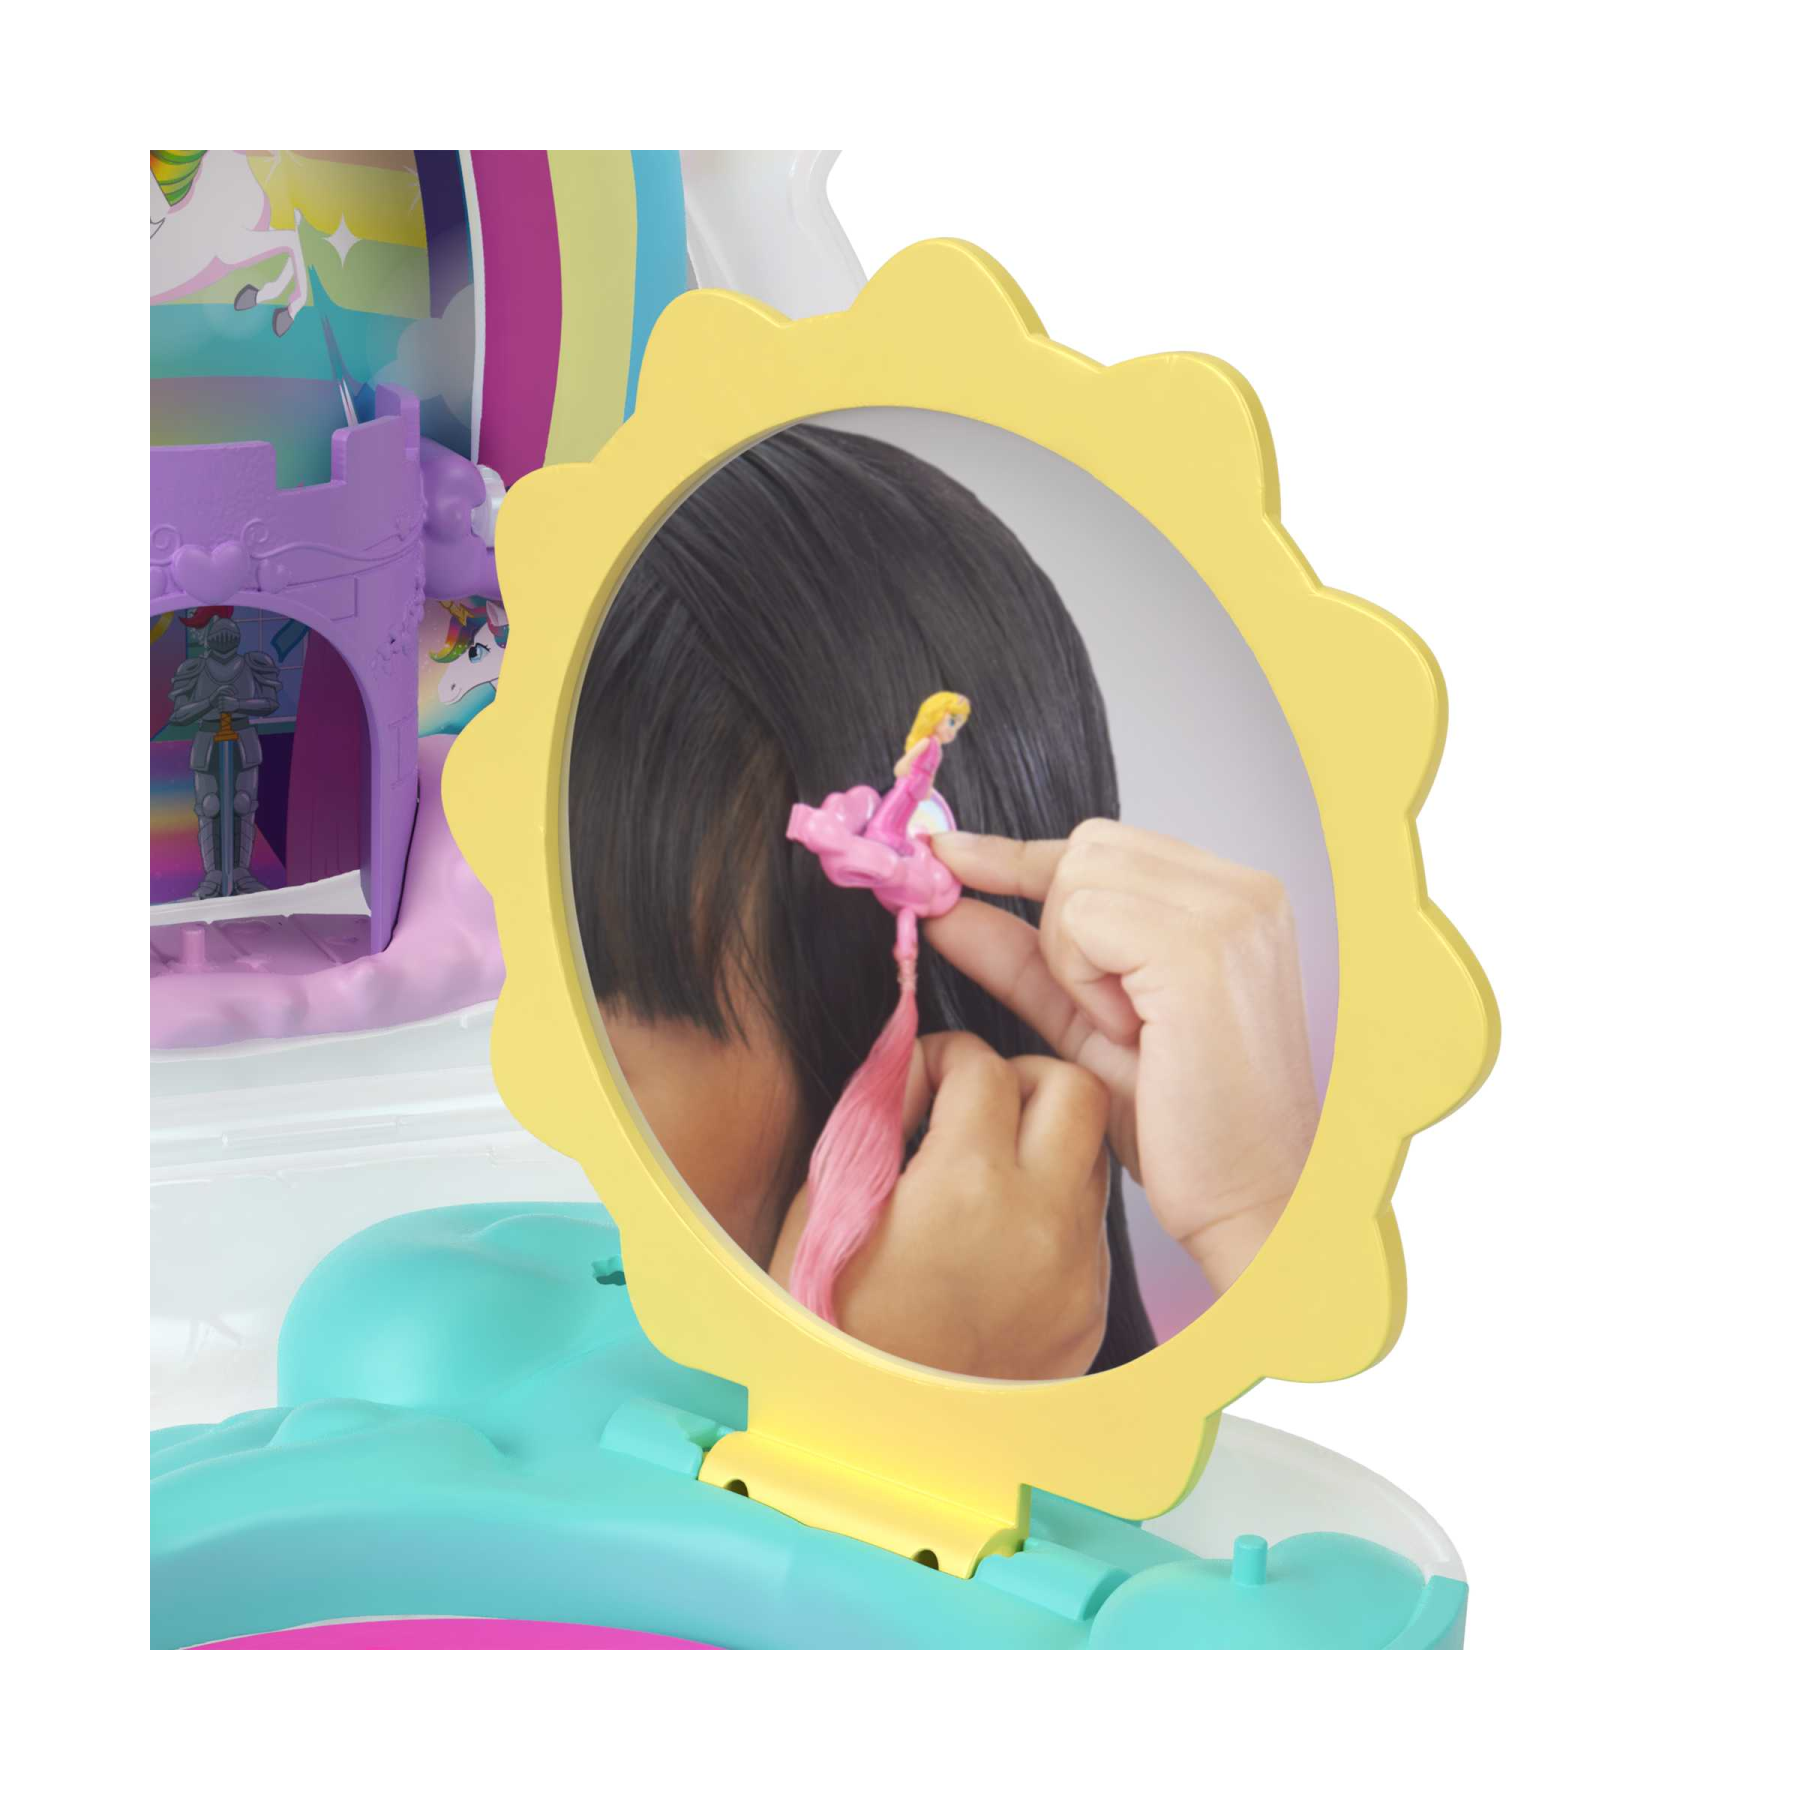 Polly pocket - salone di bellezza unicorno arcobaleno, playset con unicorno arcobaleno dalla testa pettinabile, 2 micro bambole e 20+ accessori, giocattolo per bambini, 4+ anni, hkv51 - Polly Pocket